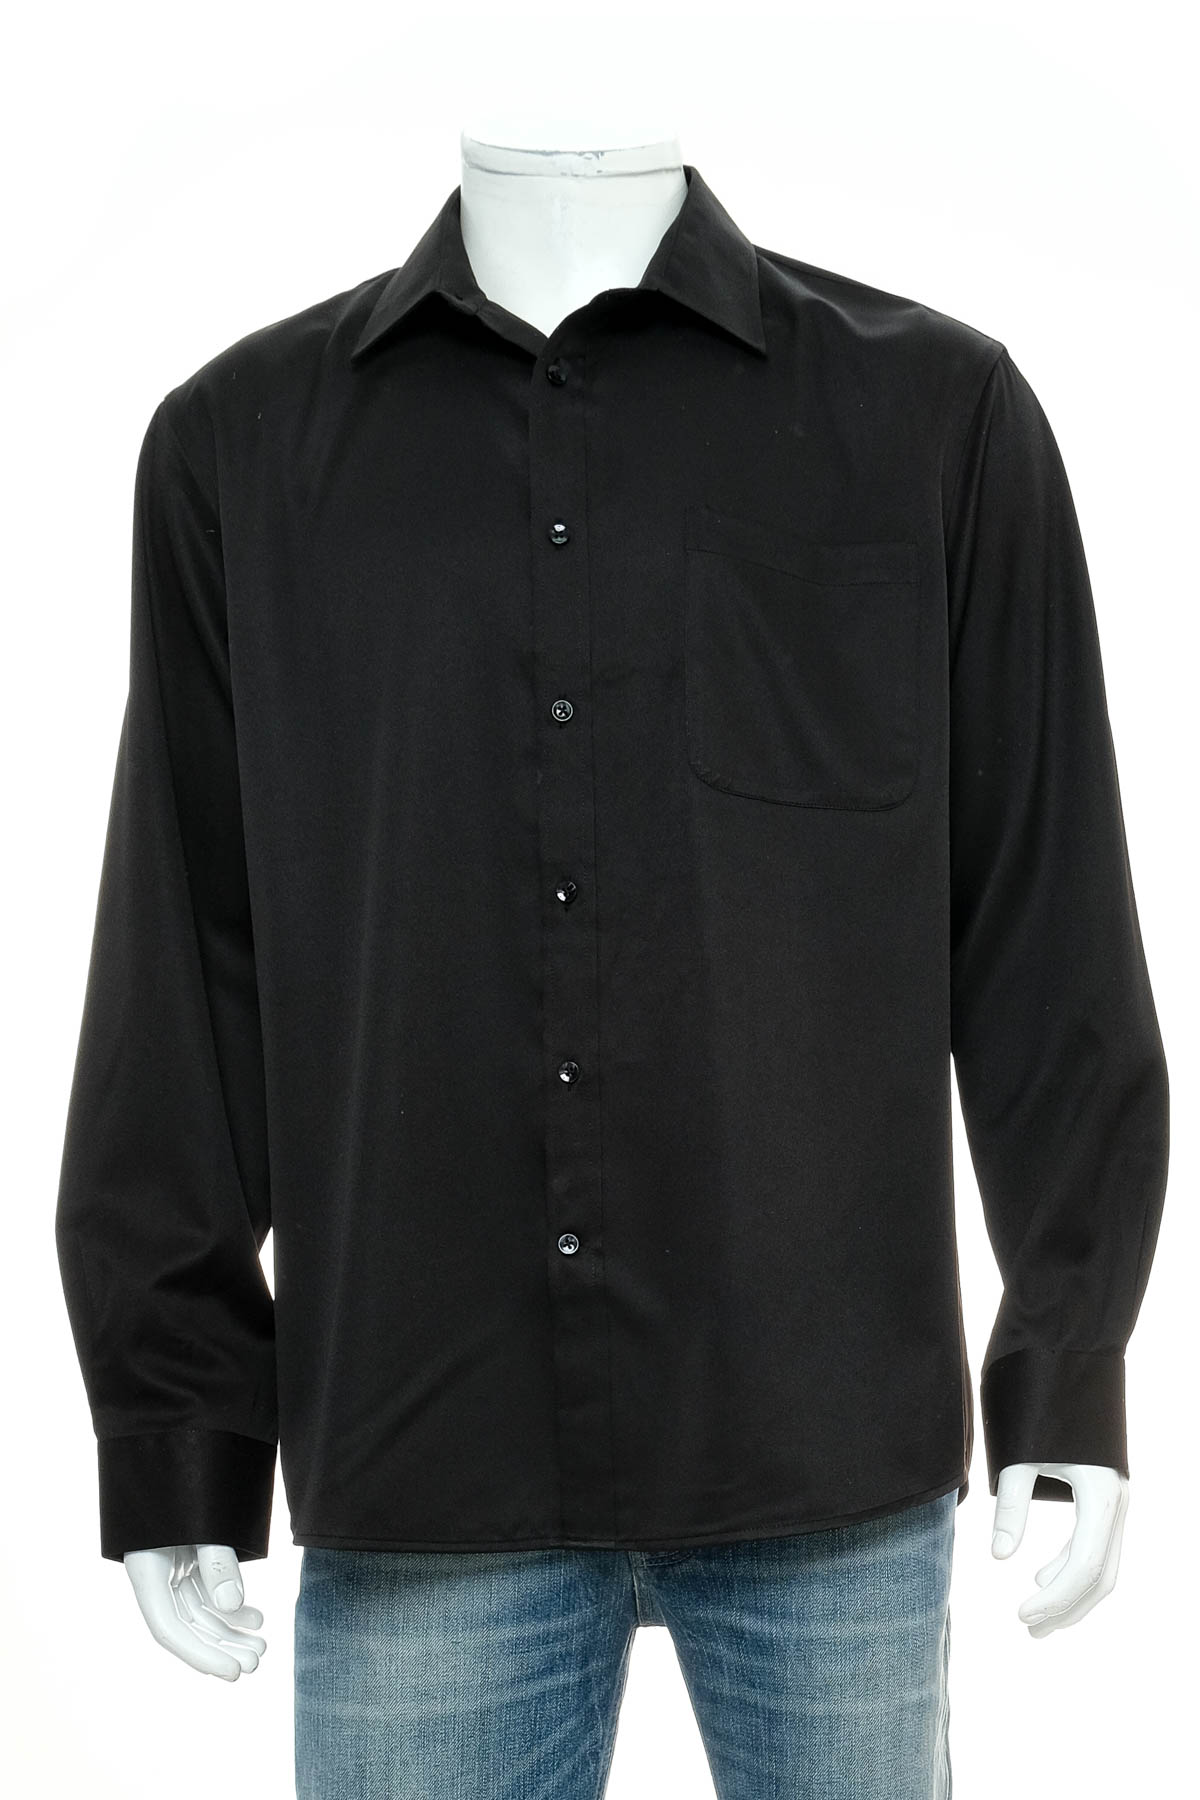 Ανδρικό πουκάμισο - FLEX - 0